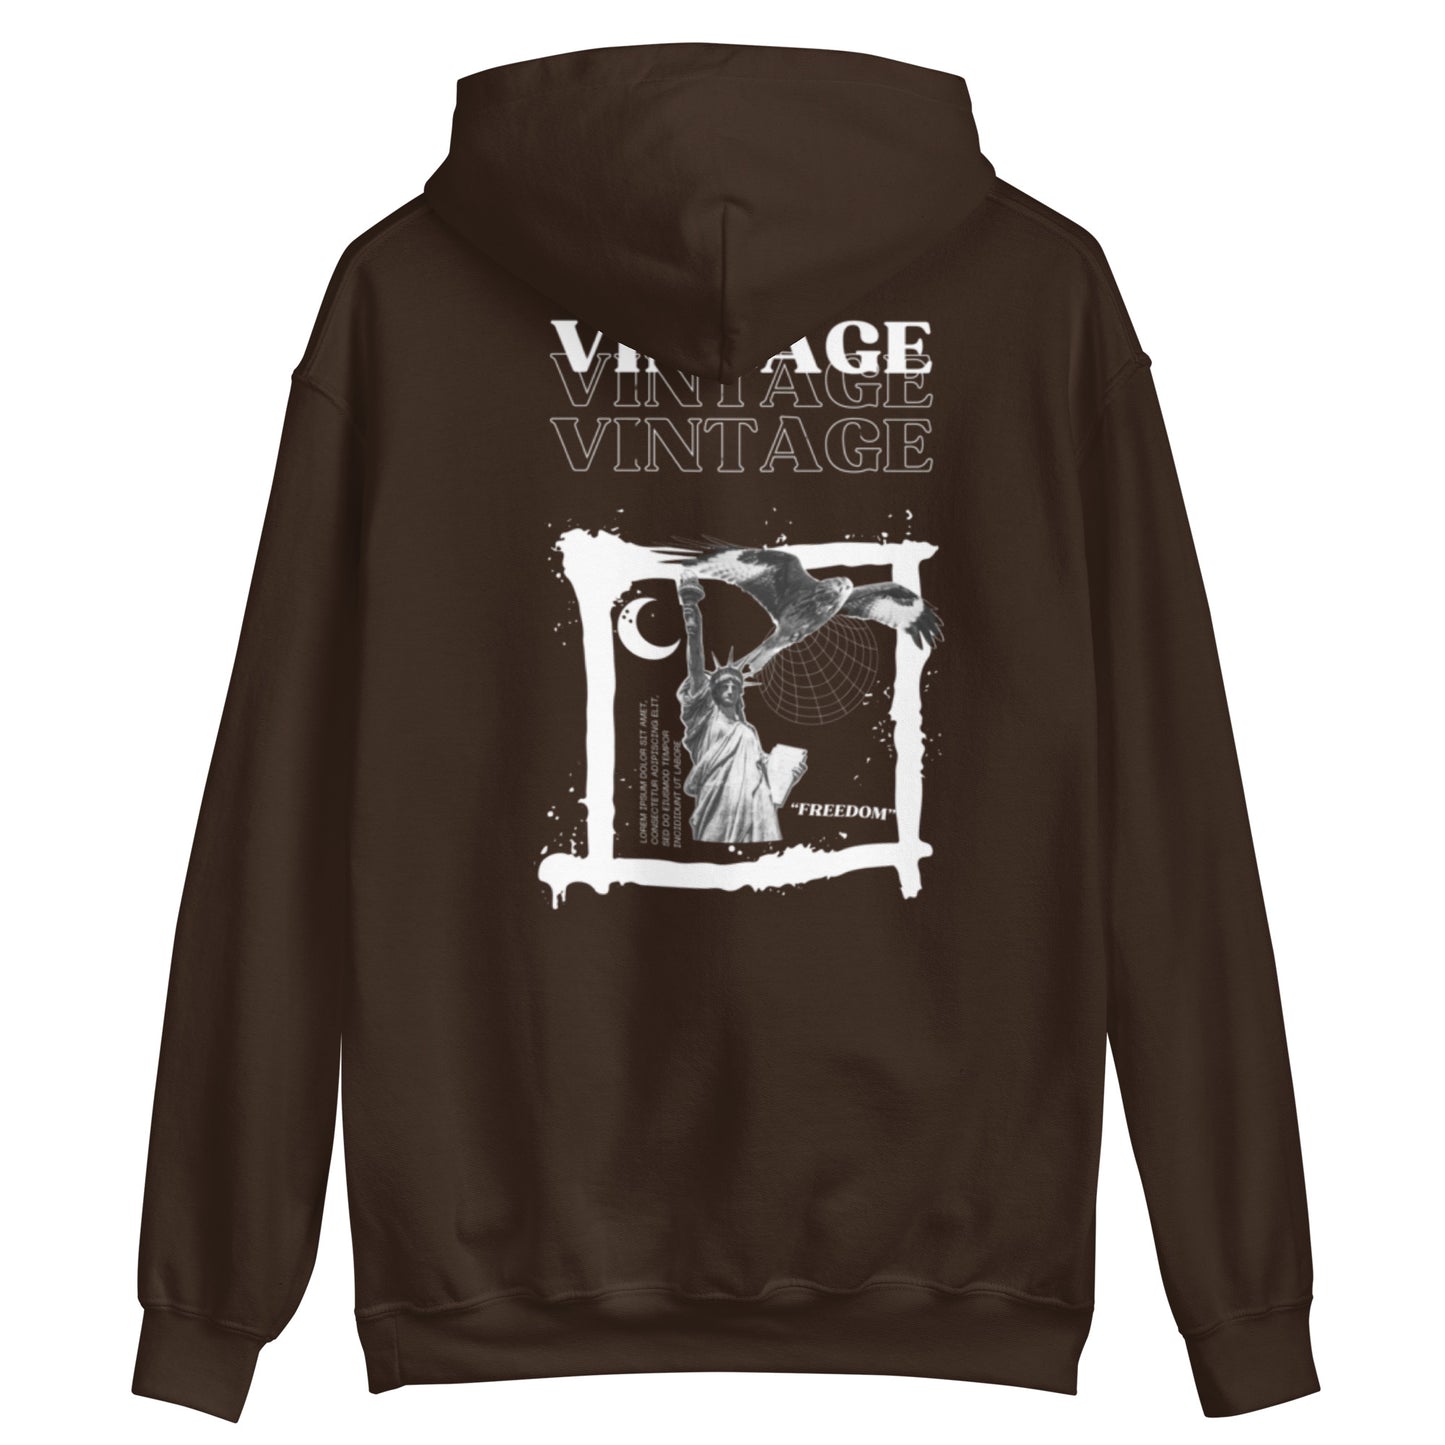 "VINTAGE" heavy hoodie